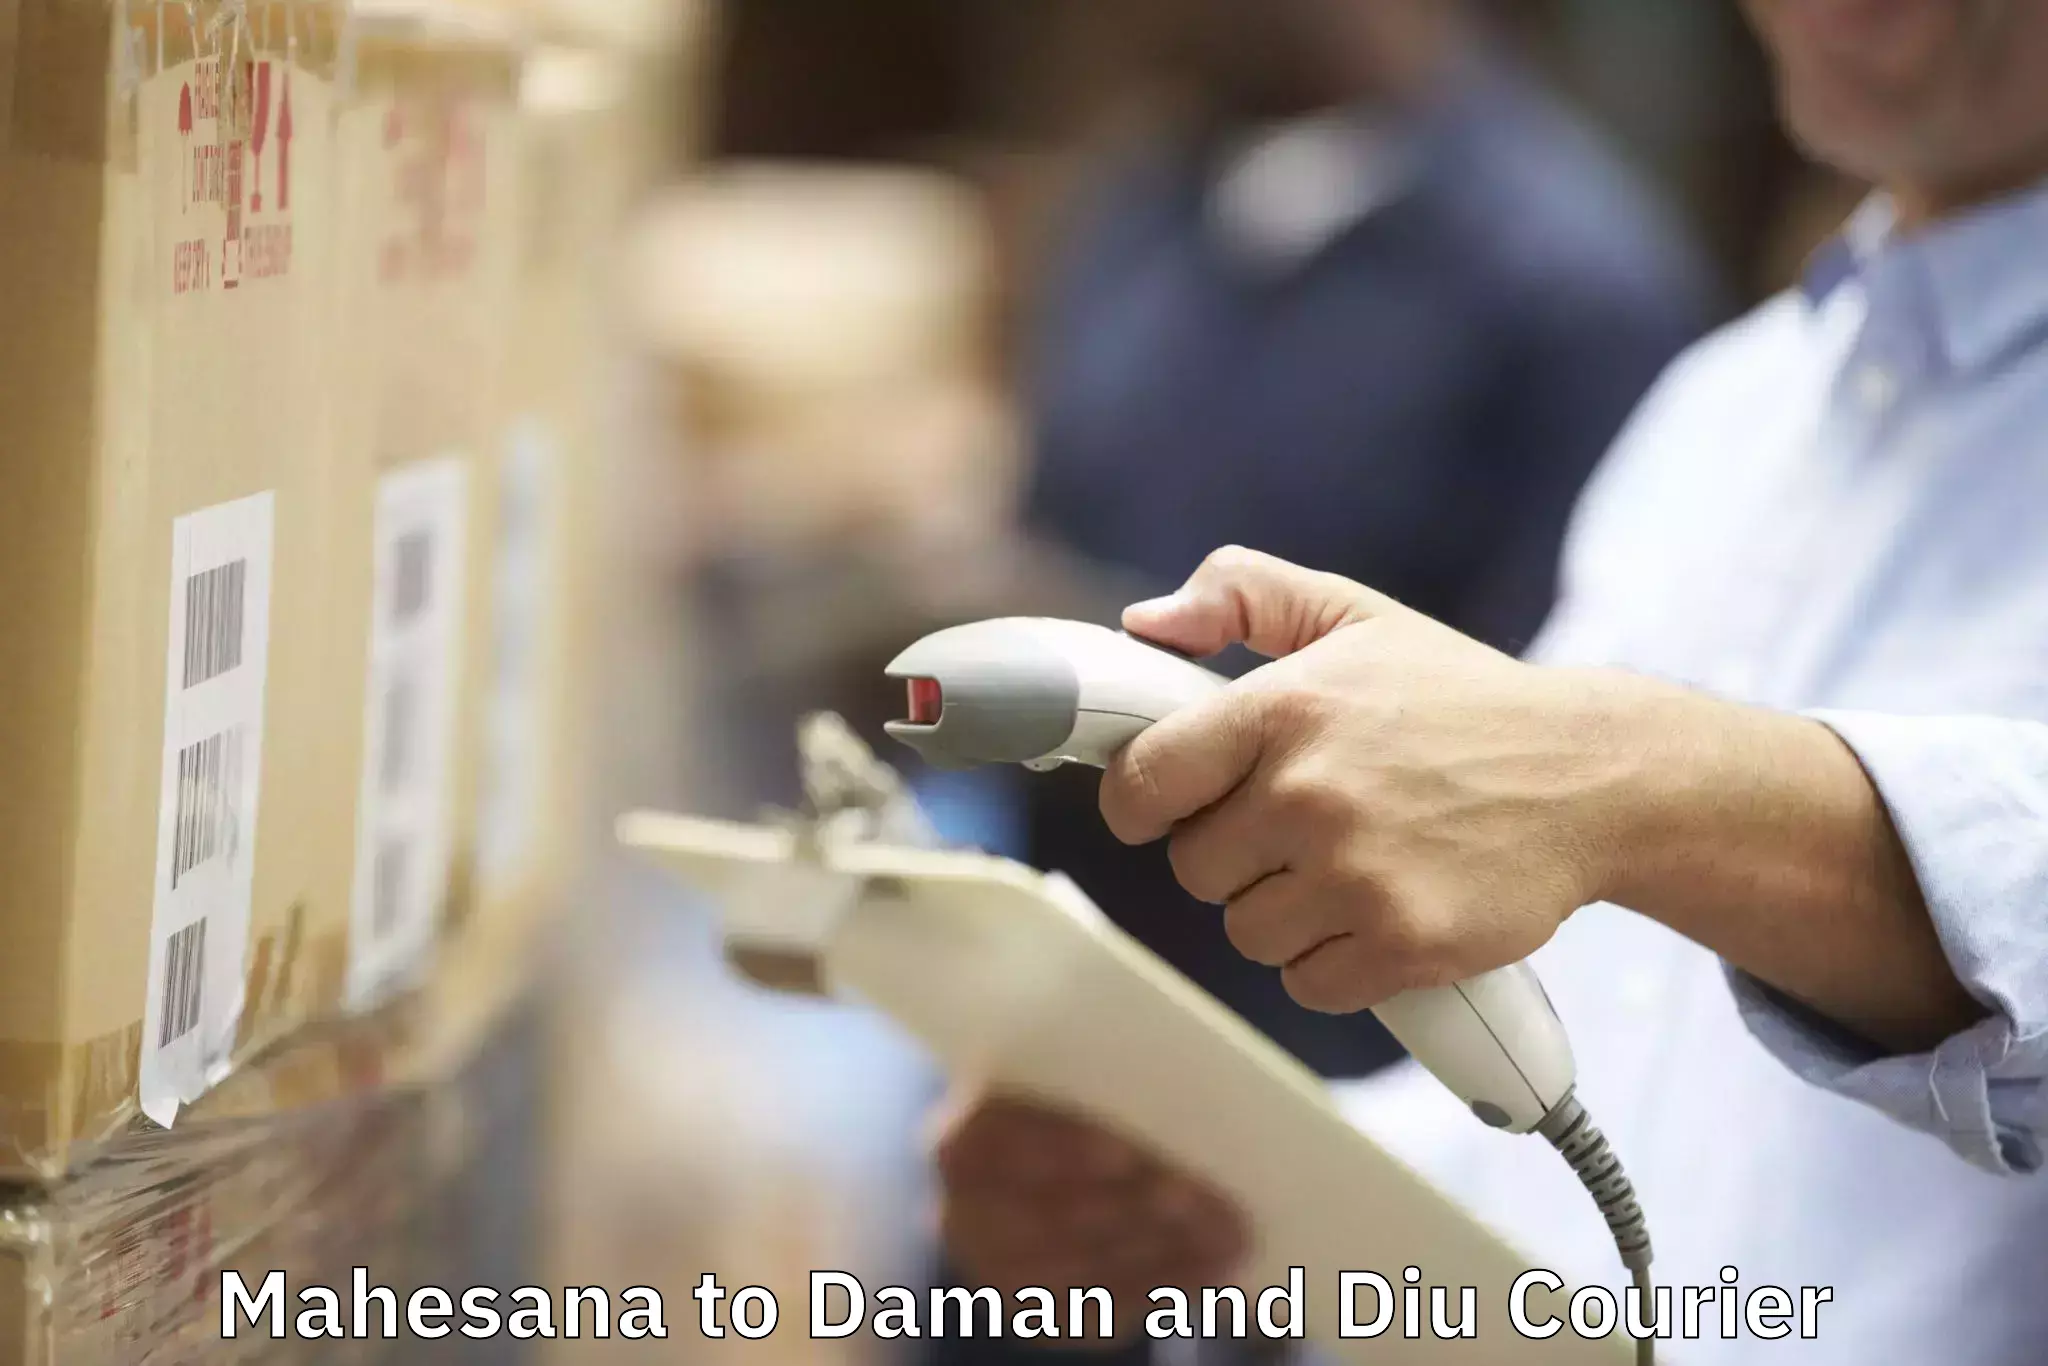 Home goods moving company Mahesana to Daman